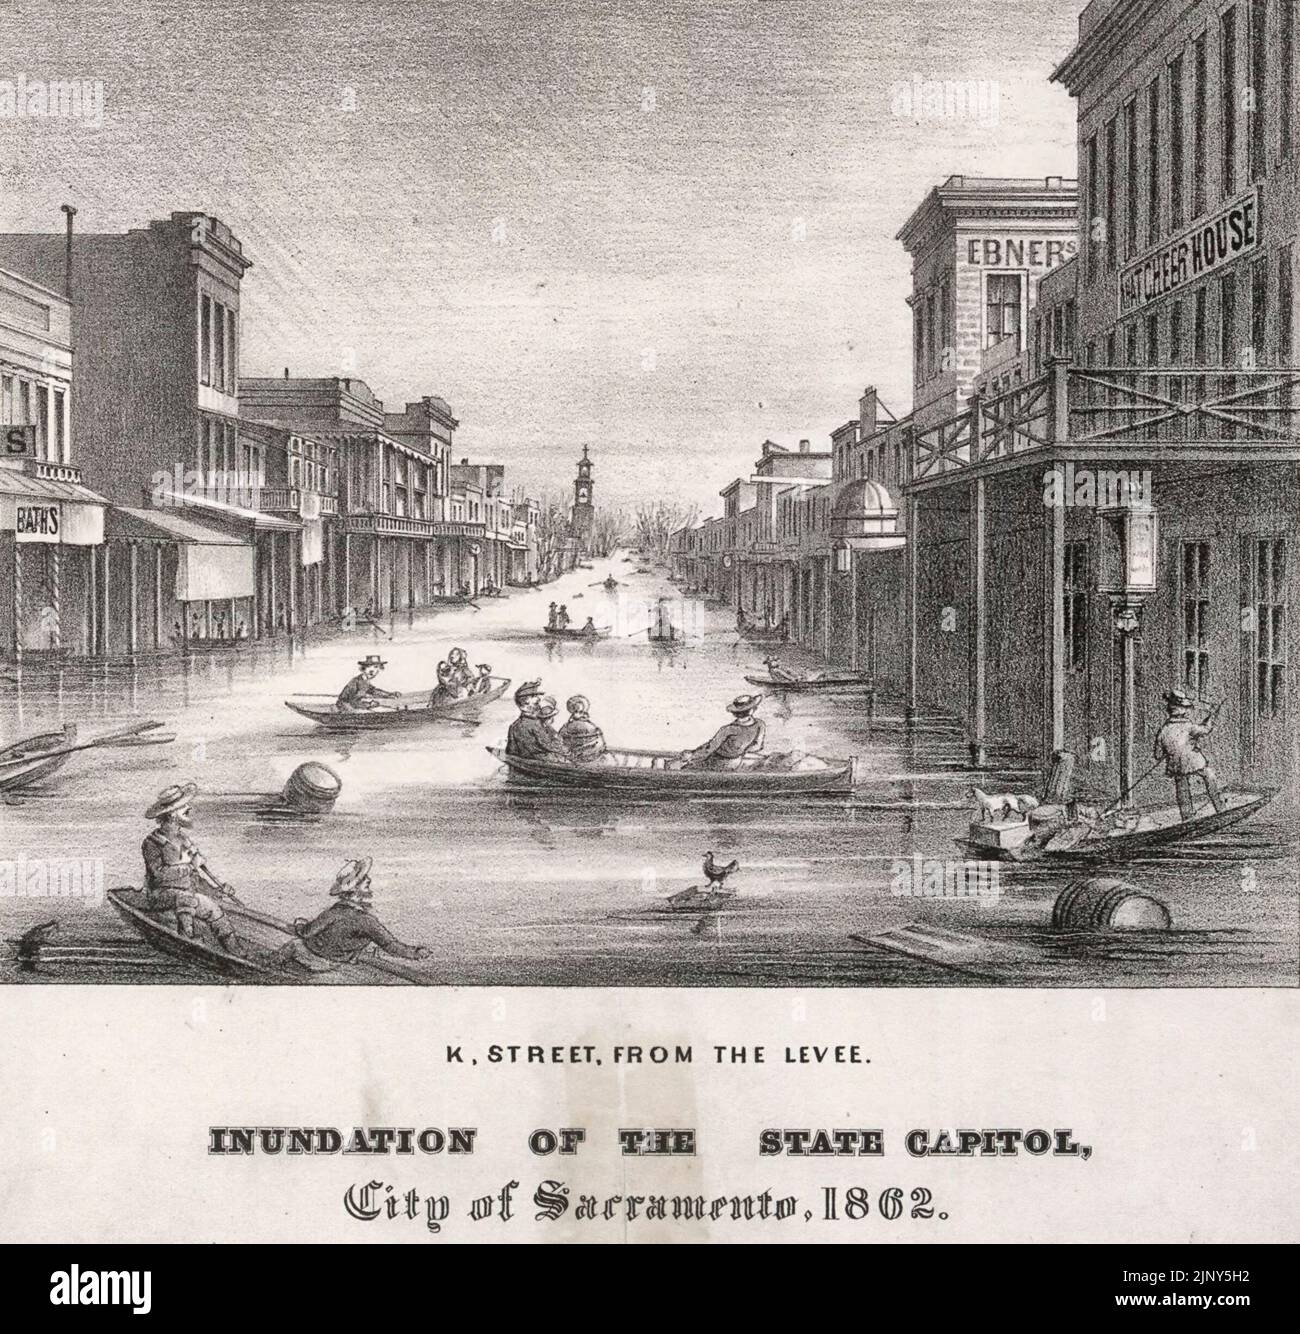 Lithographie der K Street in Sacramento, Kalifornien, während der großen Flut von 1862. Die Flut betraf die westlichen Vereinigten Staaten von Oregon über Kalifornien und Idaho bis New Mexico Stockfoto